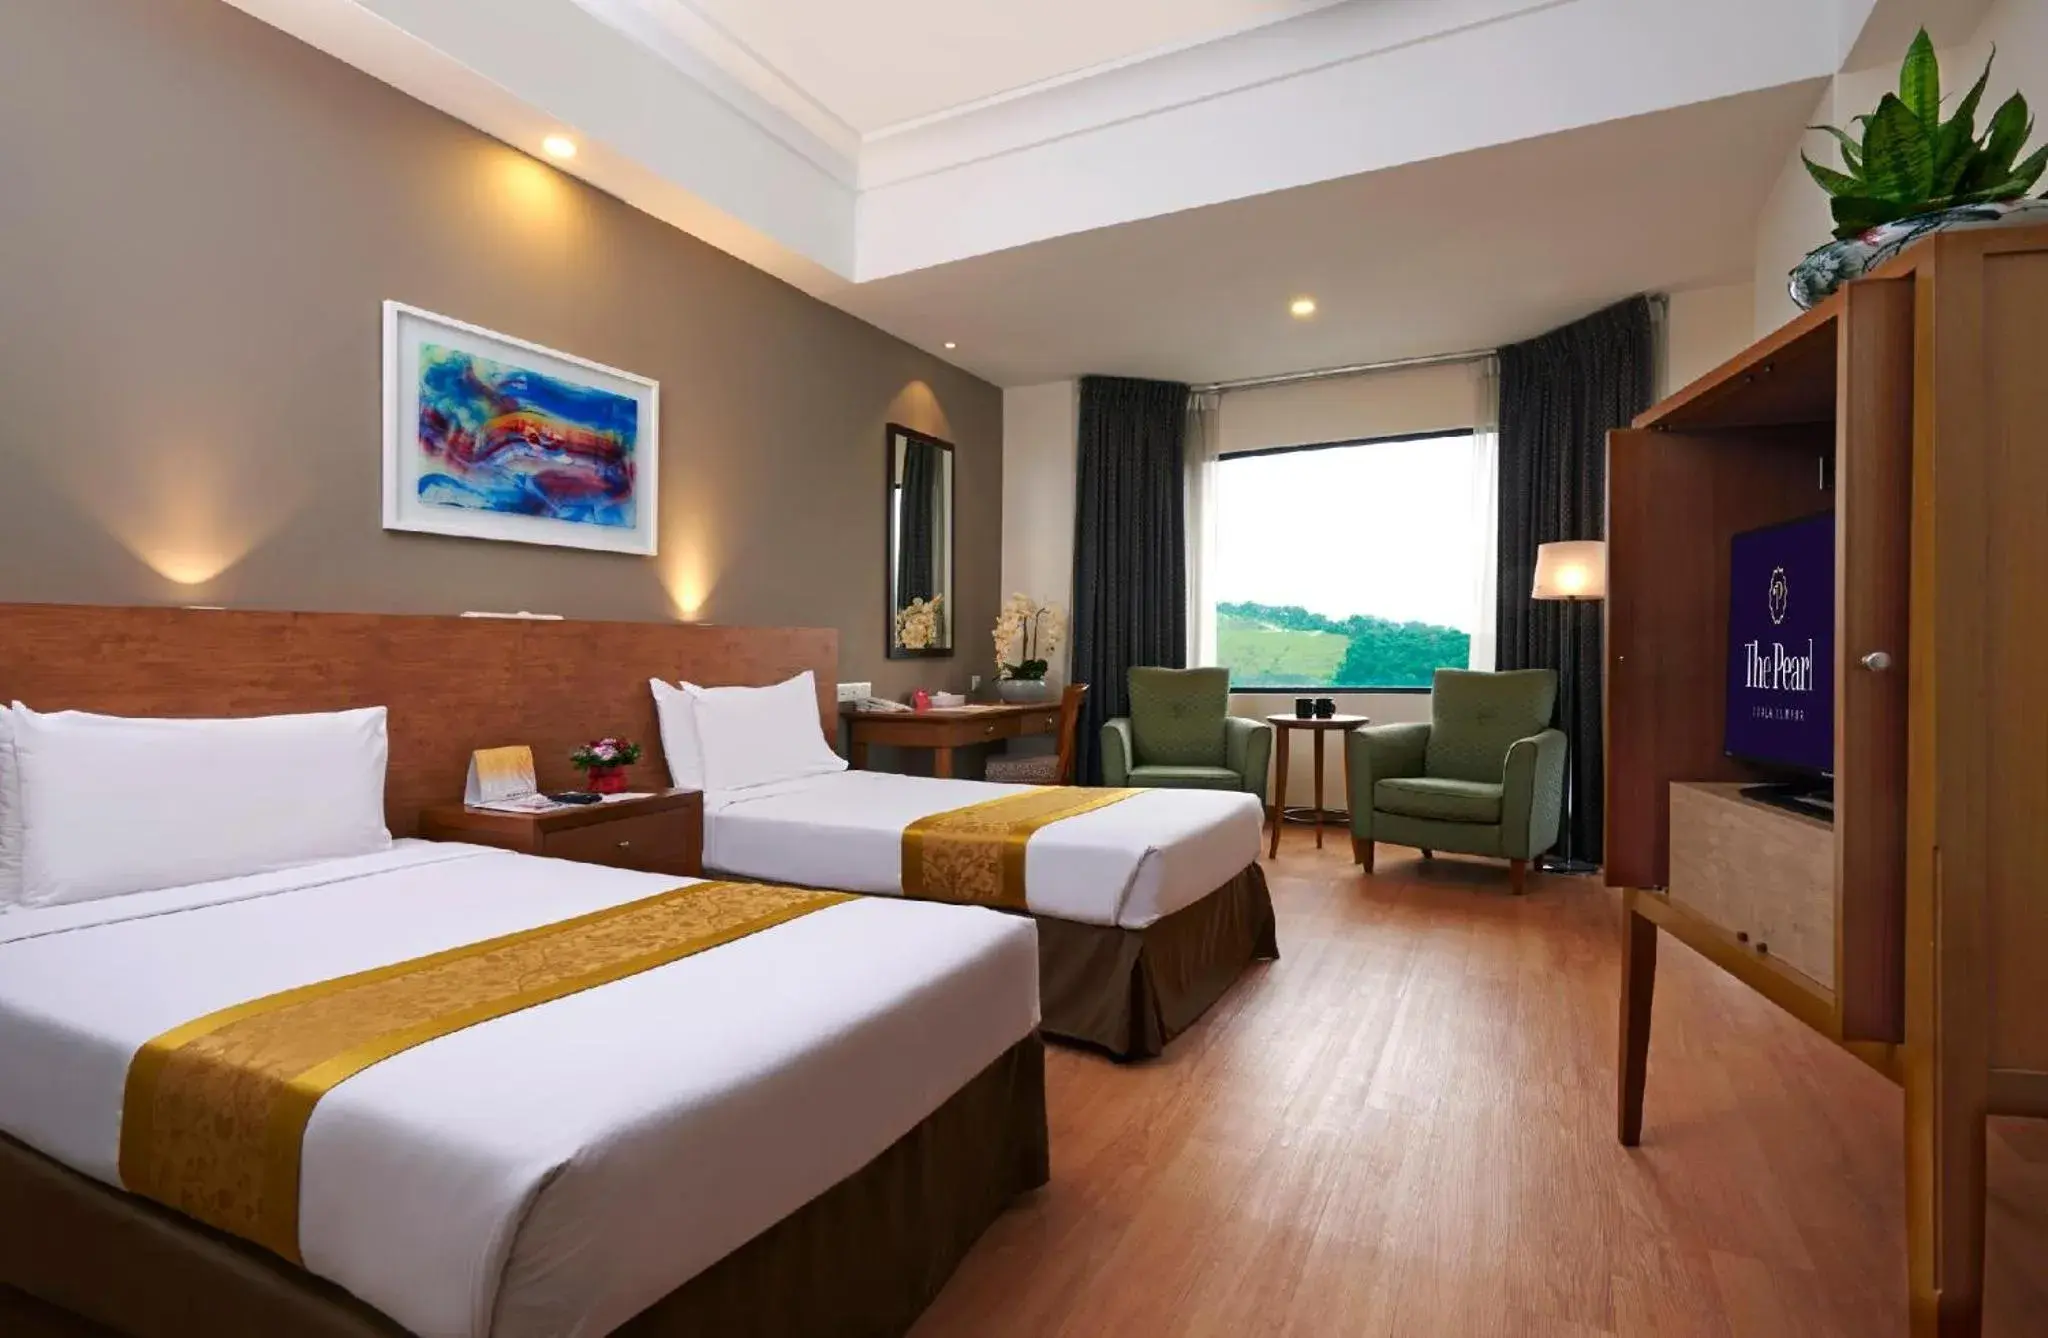 Bedroom in Pearl International Hotel